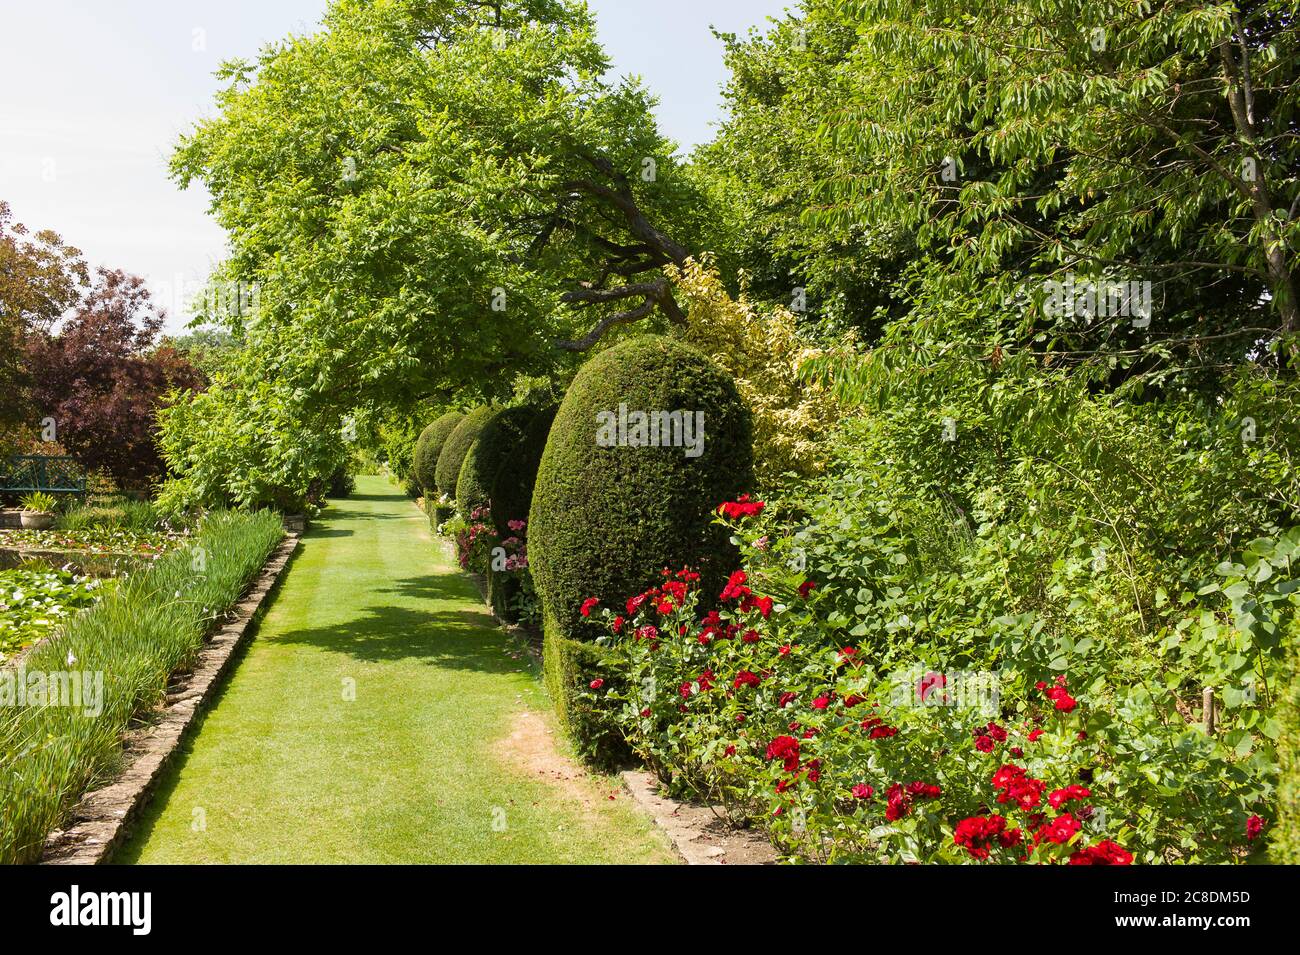 Un hermoso jardín inglés las canchas que está abierto al público durante todo el año. Aquí hay un camino de hierba junto a una piscina y borde herbáceo mixto Foto de stock